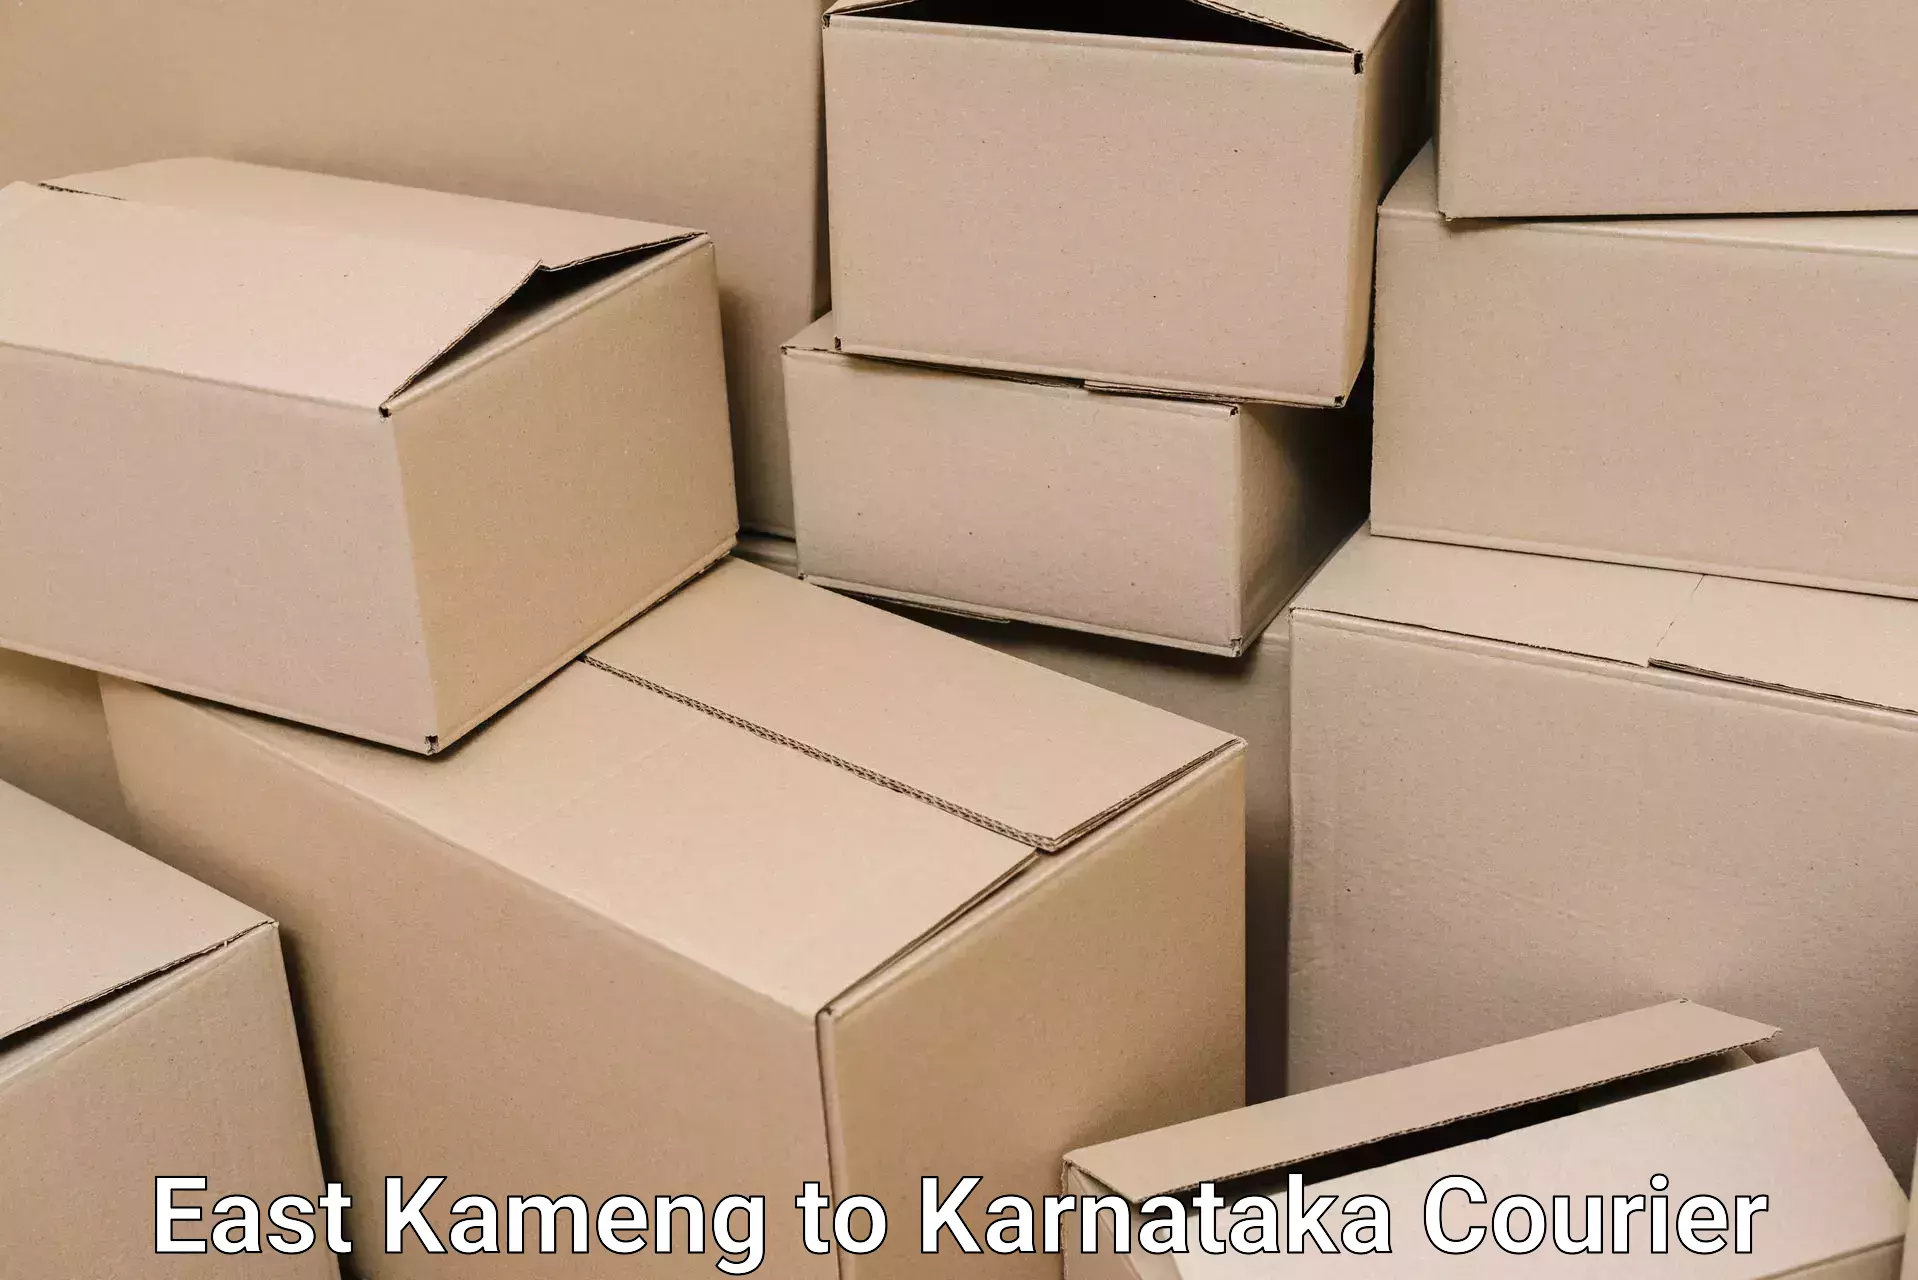 Furniture delivery service East Kameng to Bangarapet